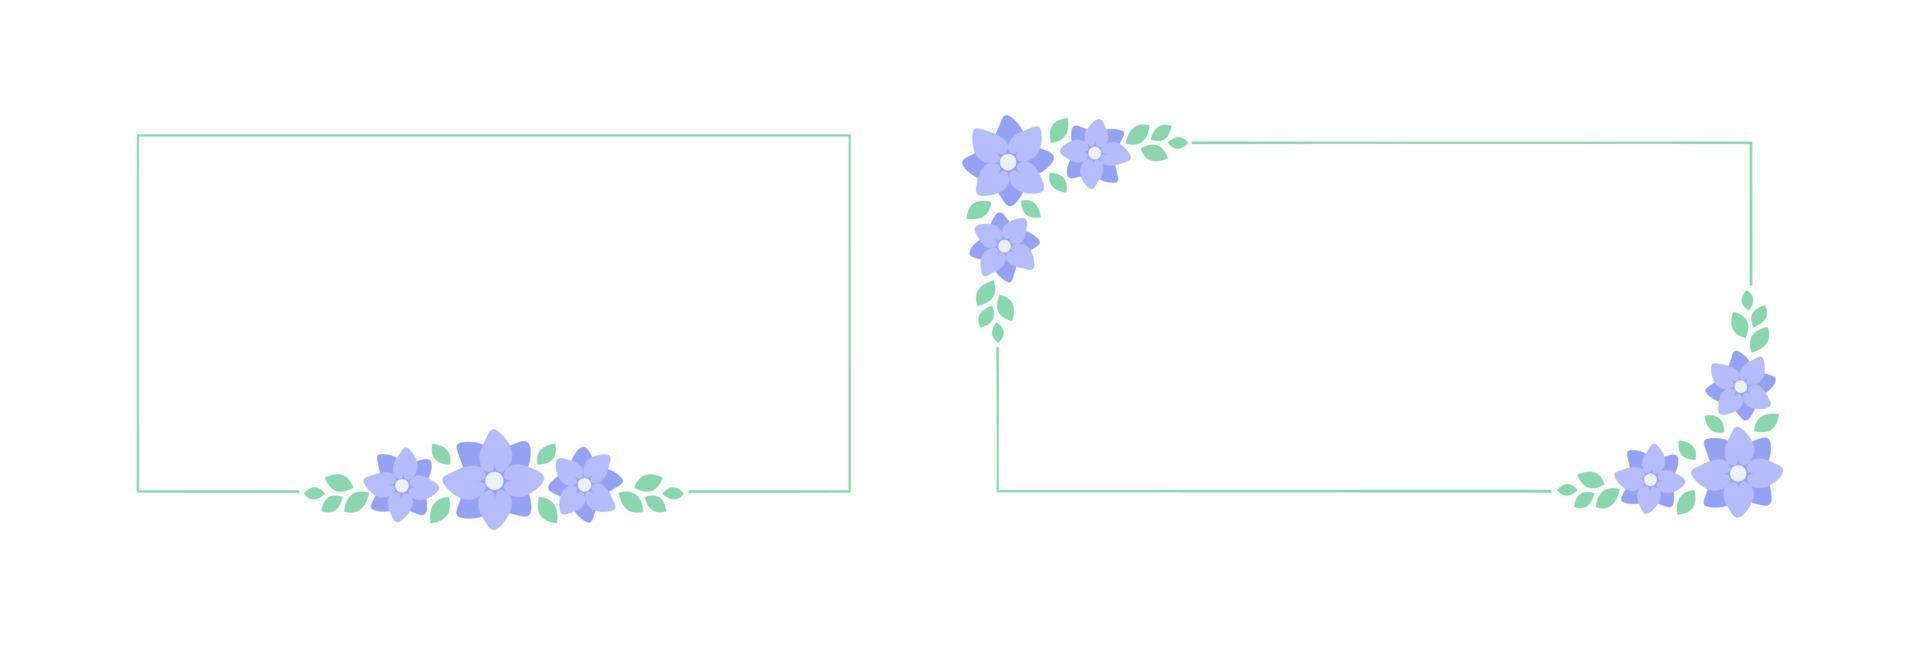 Rectangle lavender floral frame set. Botanical flower border vector illustration. Simple elegant romantic style for wedding events, signs, logo, labels, social media posts, etc.